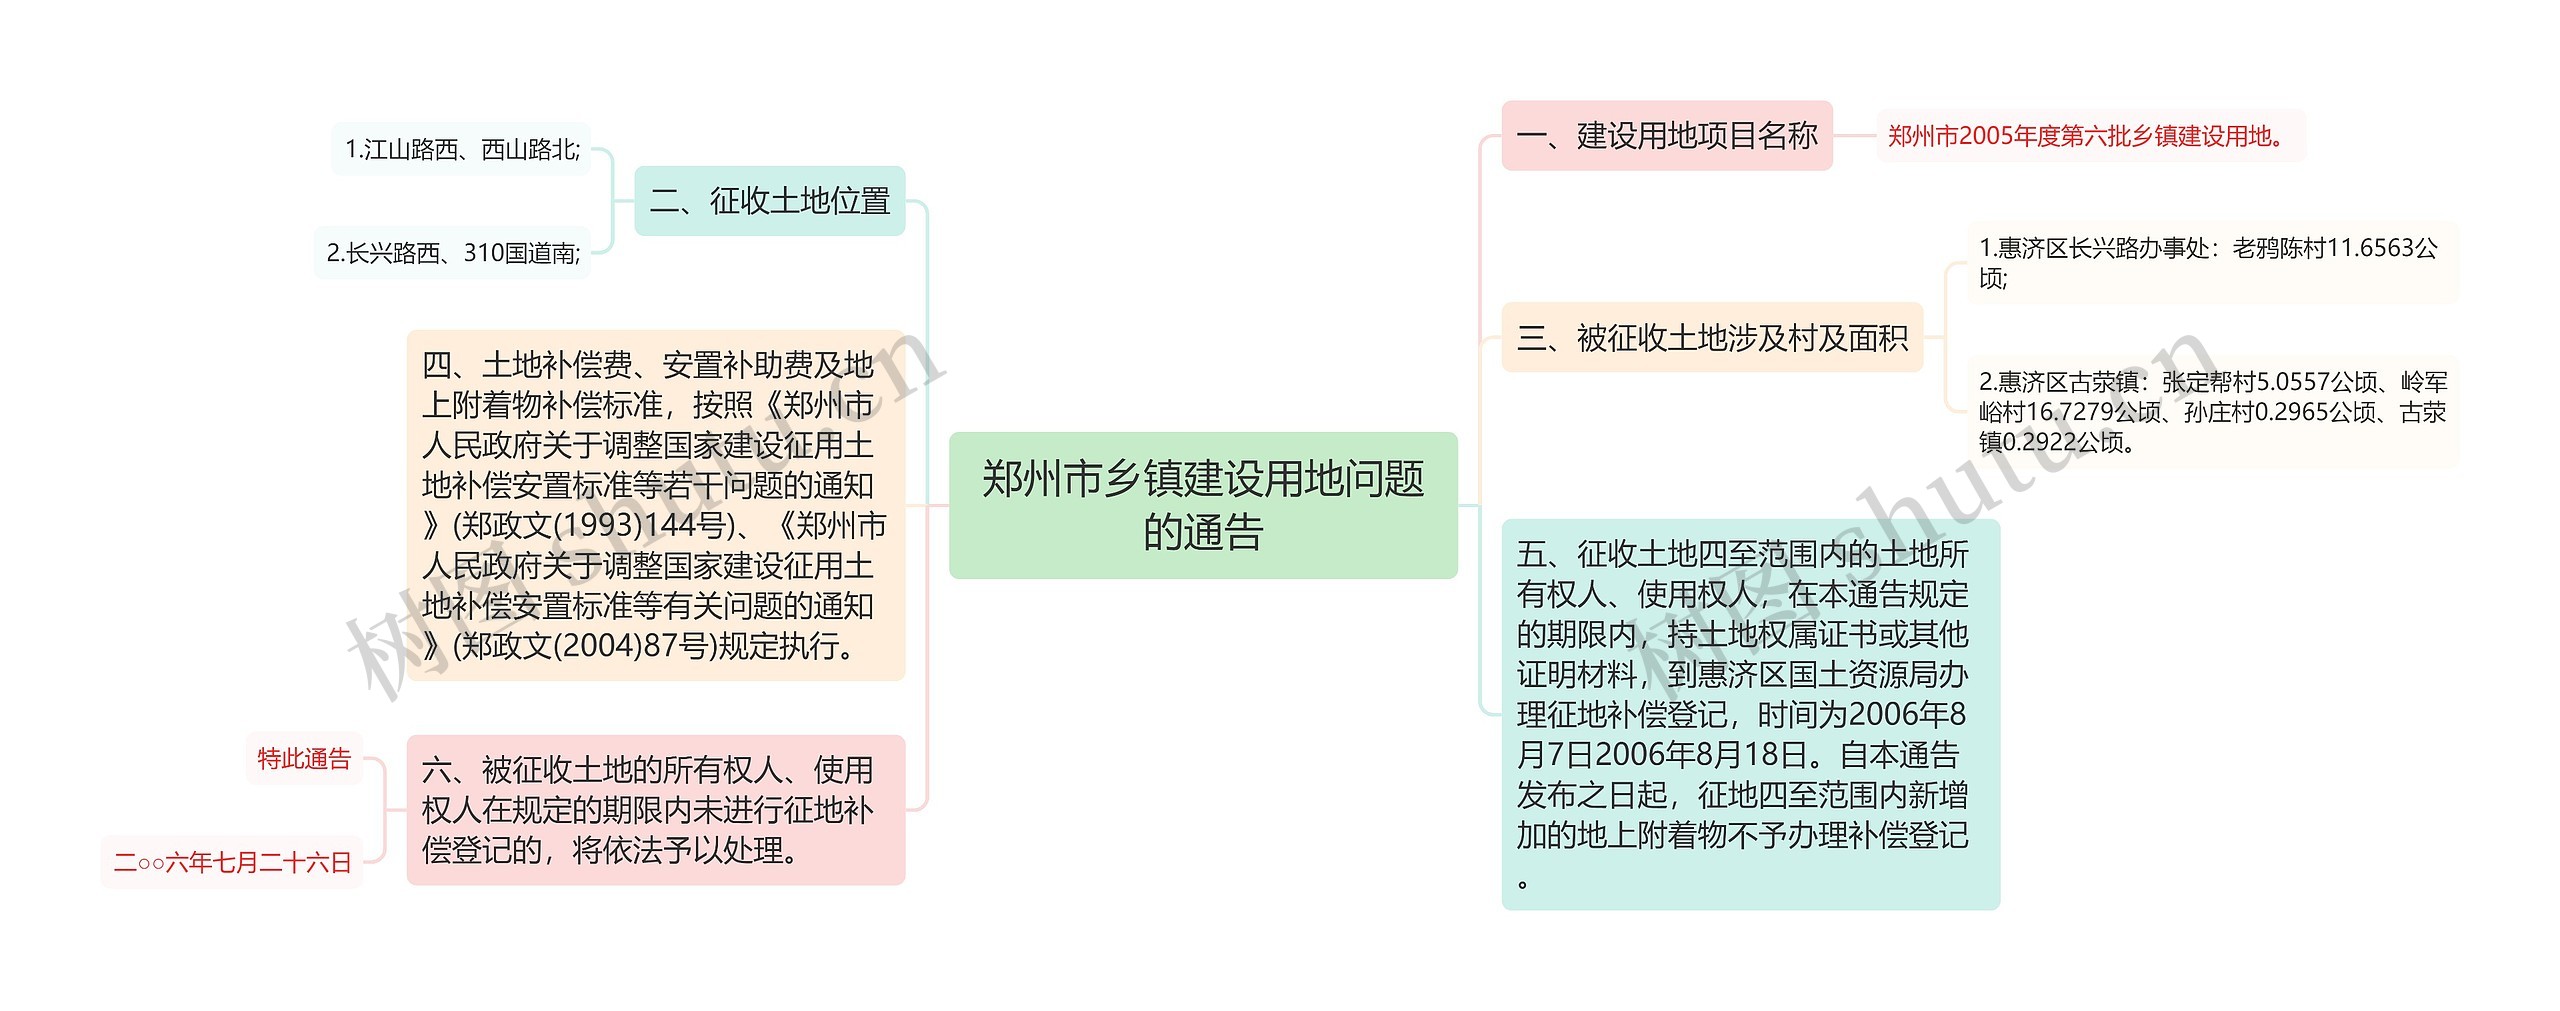 郑州市乡镇建设用地问题的通告思维导图